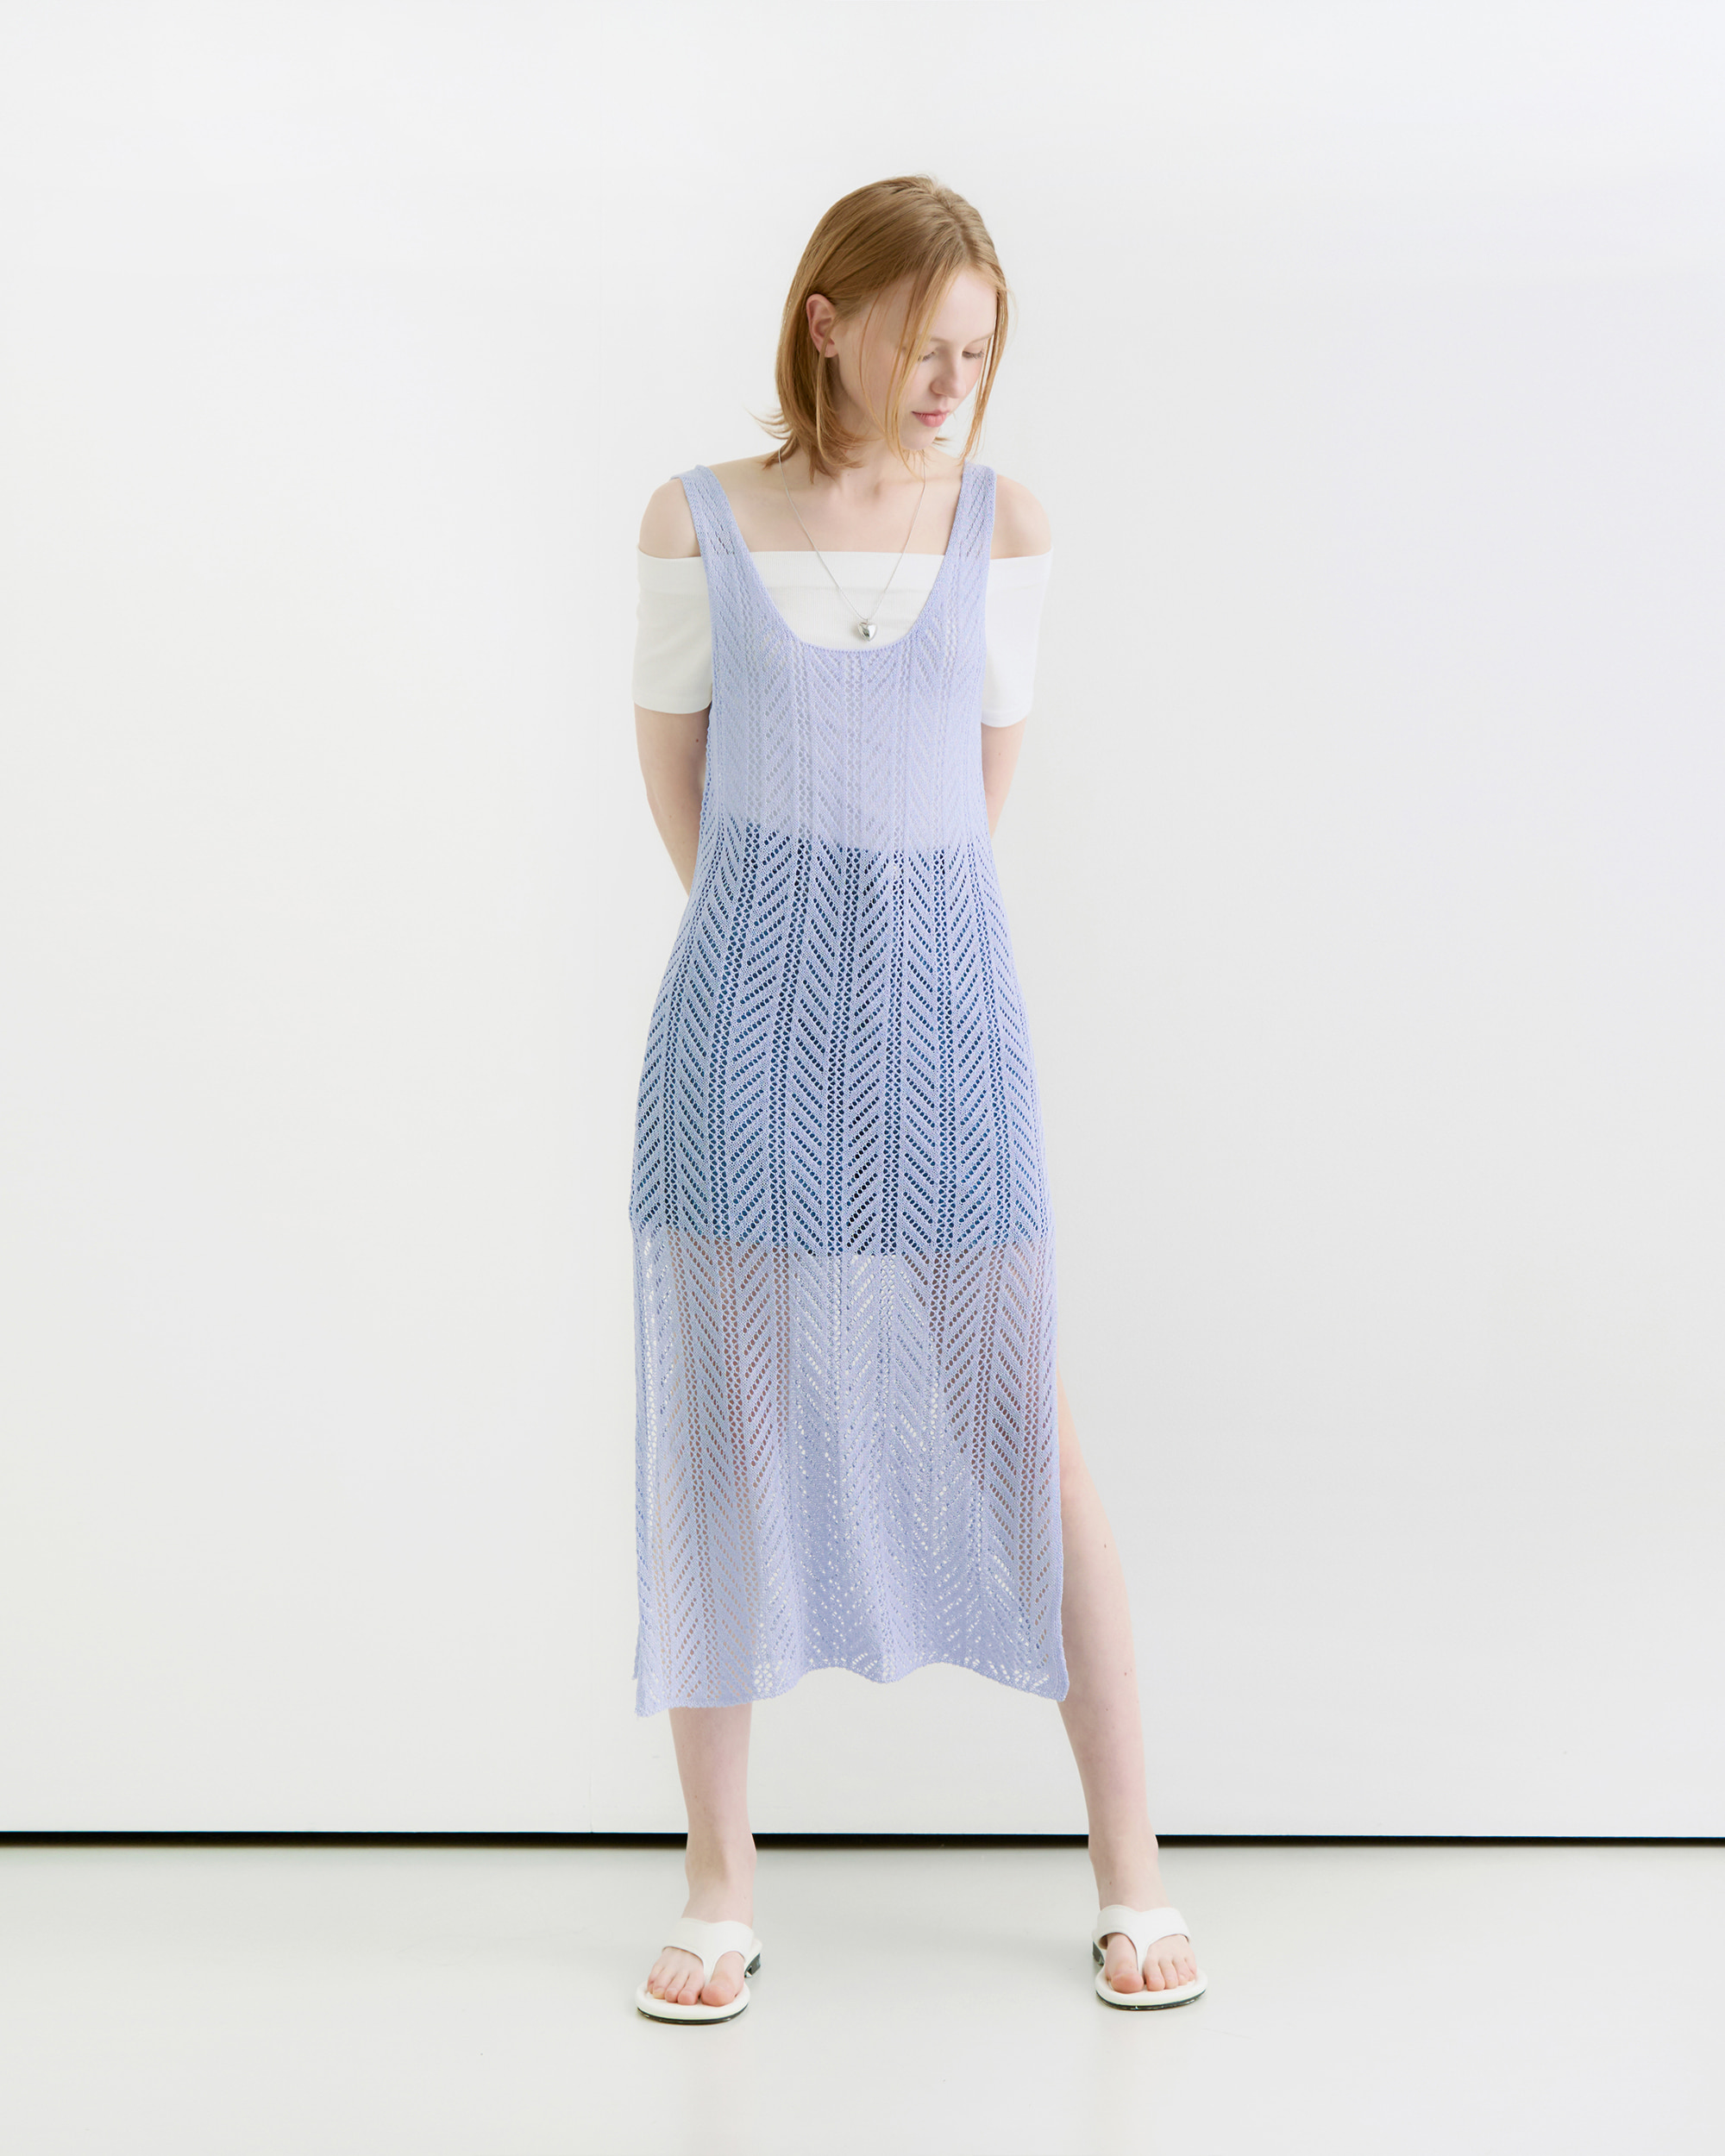 Netting pattern layered slit long dress - coolblue